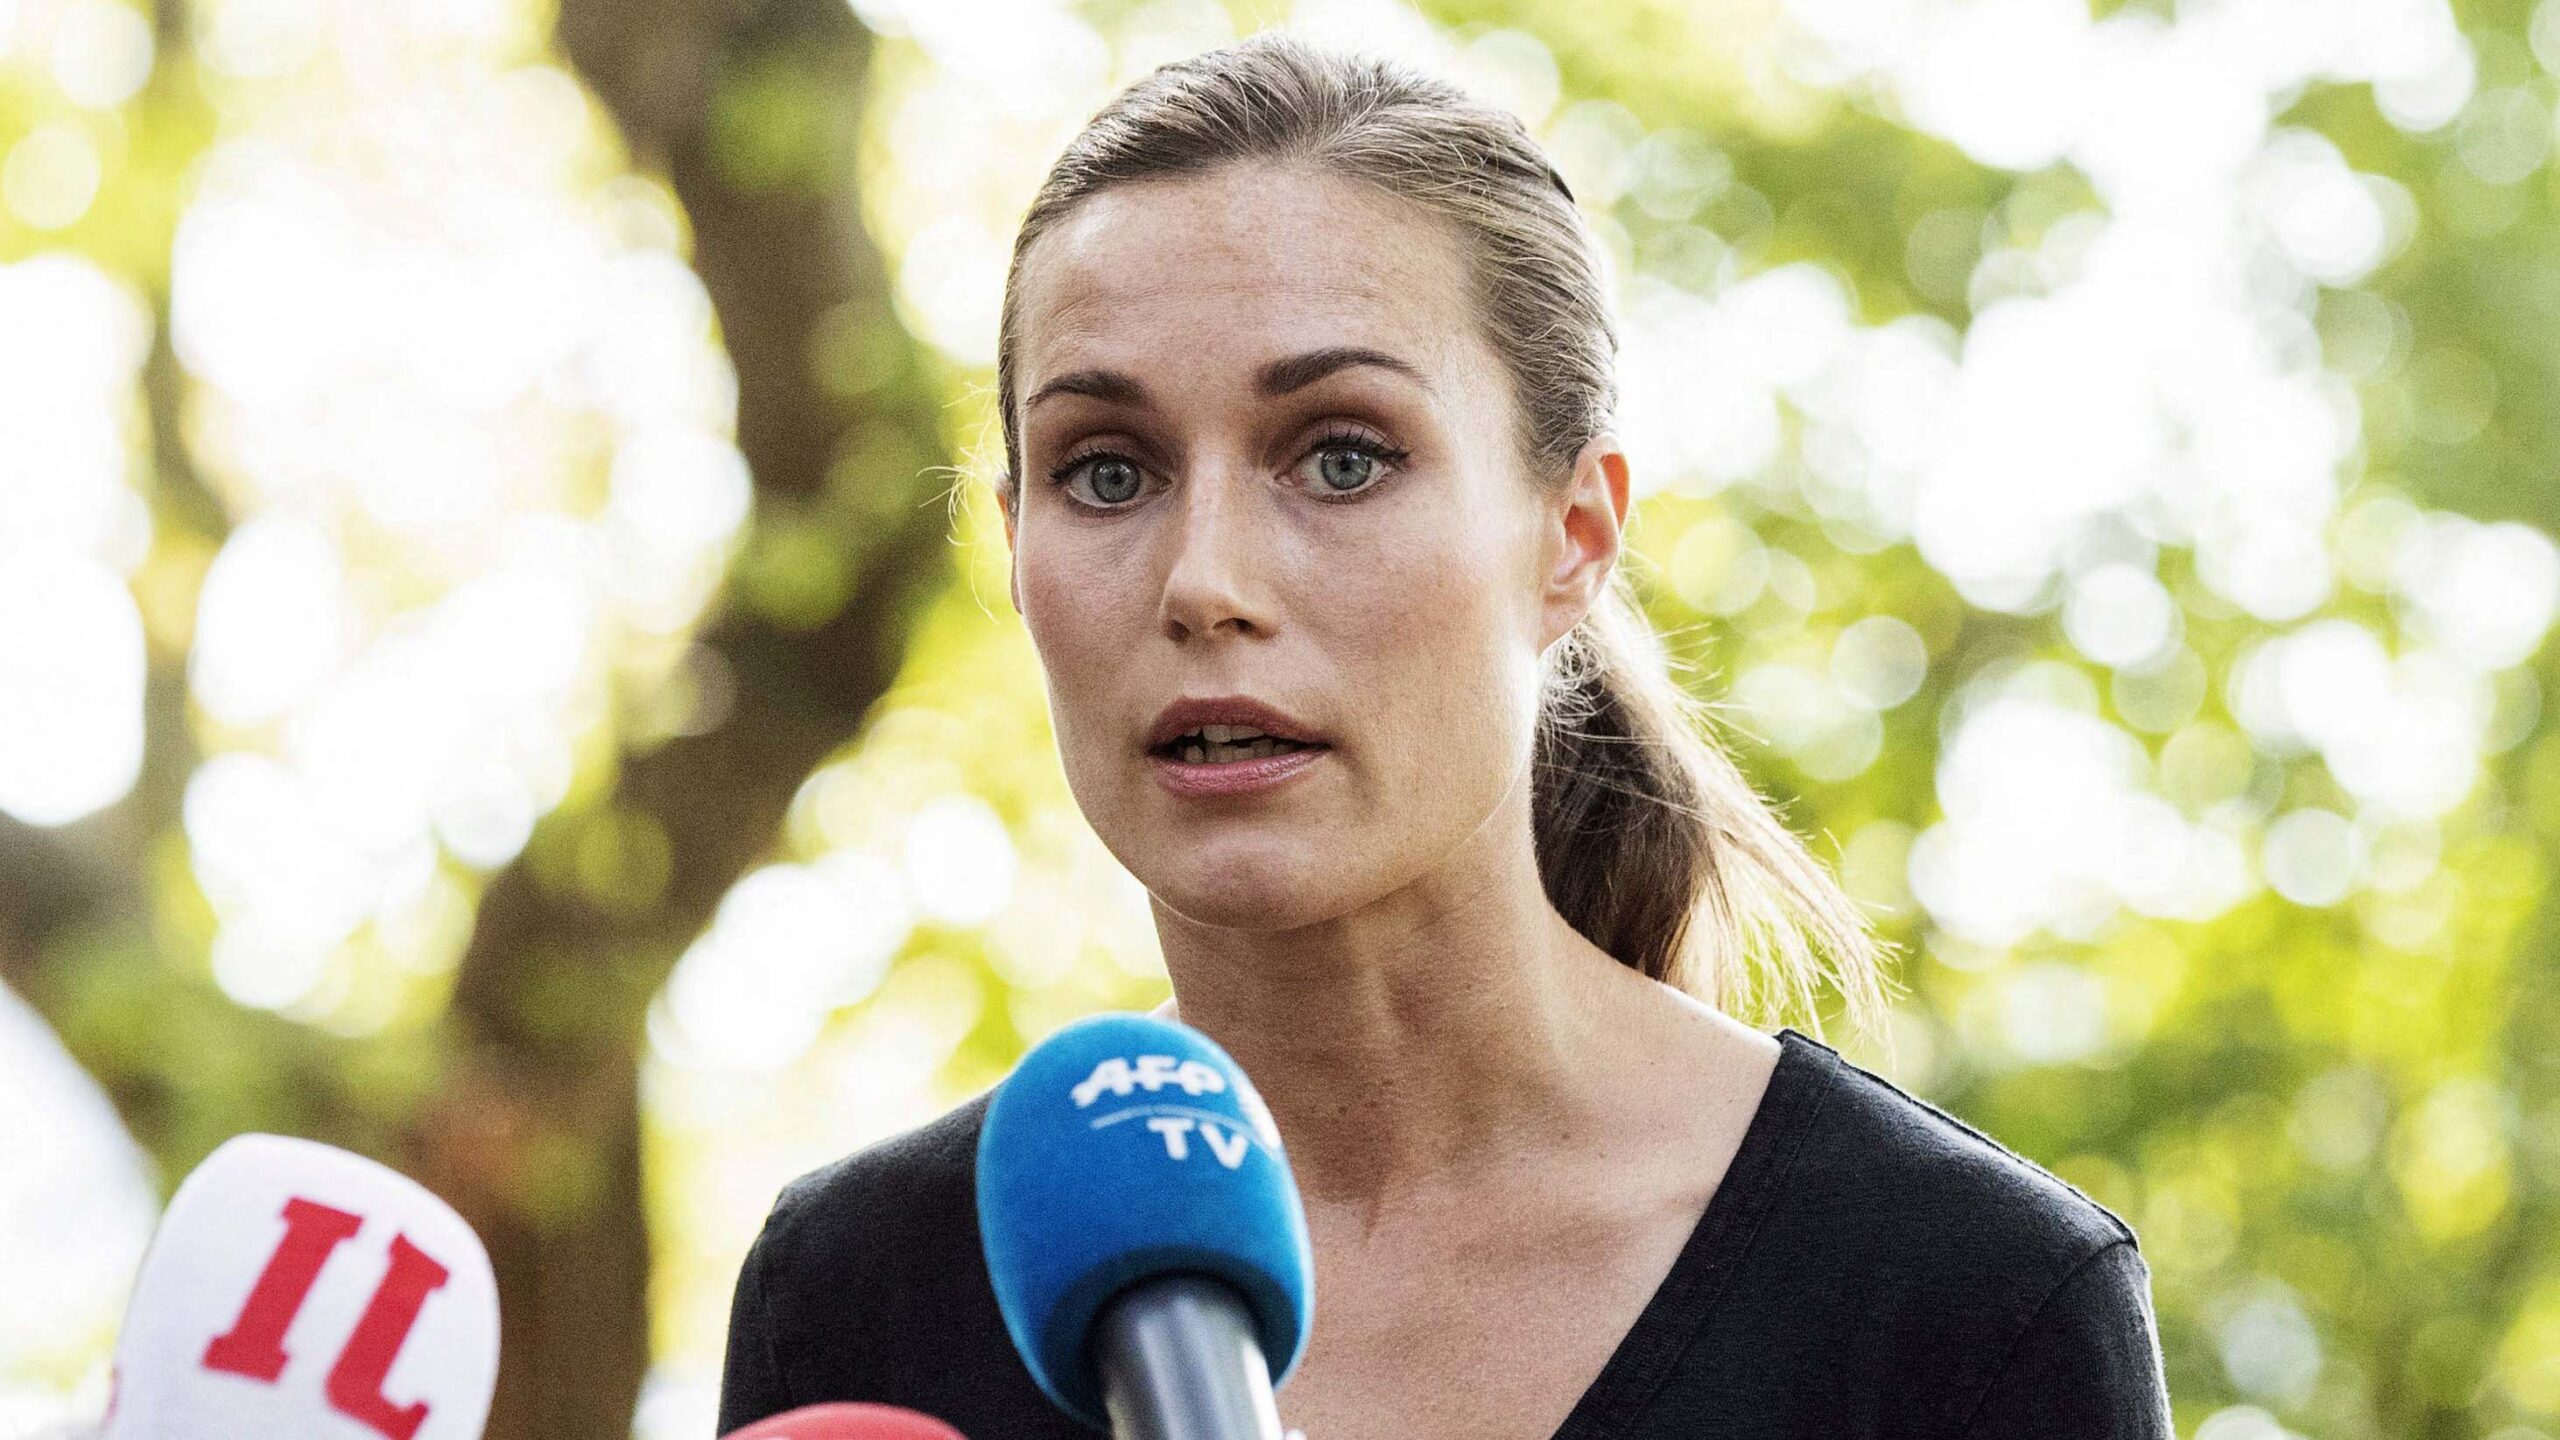 Revelan el resultado del test de drogas de la primera ministra de Finlandia tras una fiesta “salvaje”